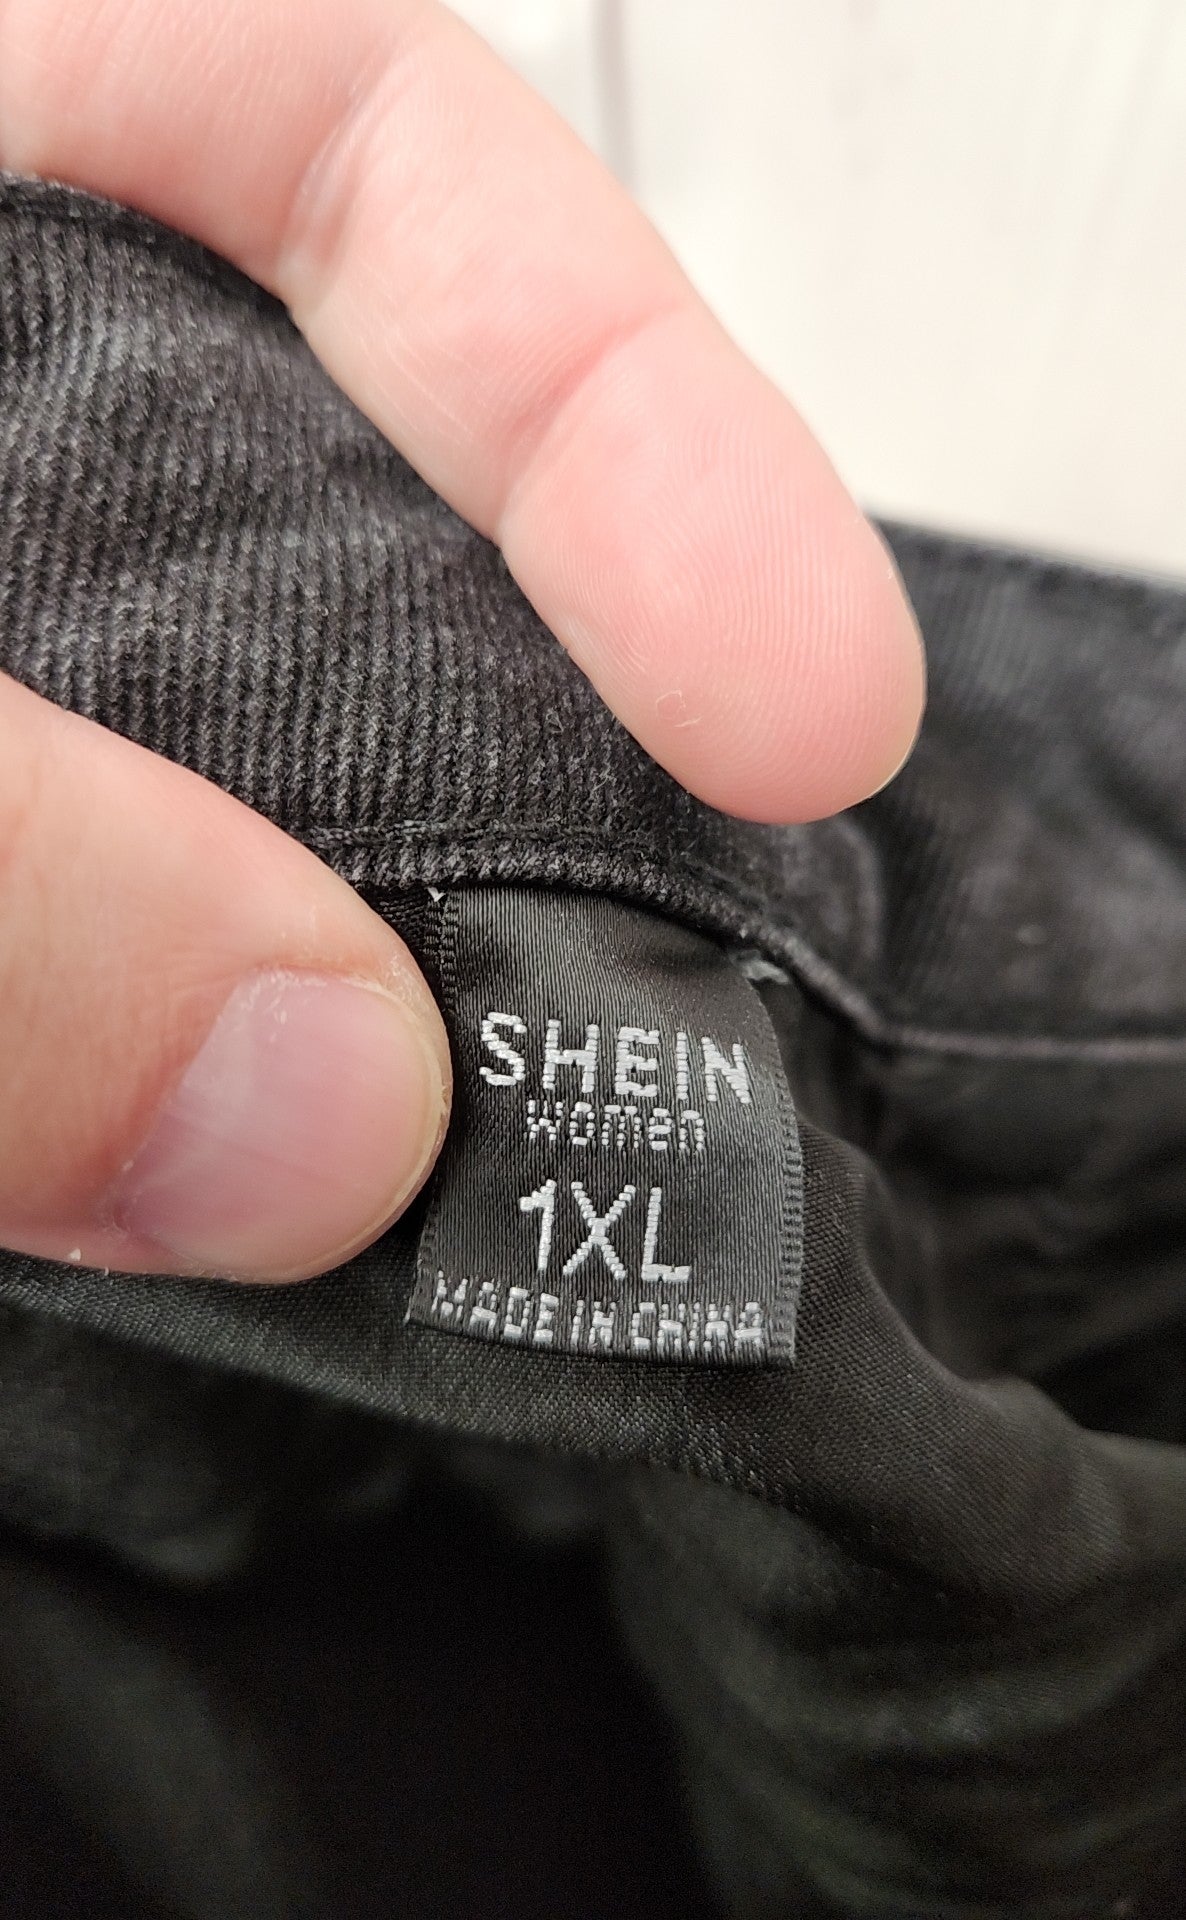 Shein Women's Size 1X Black Pants Jeans